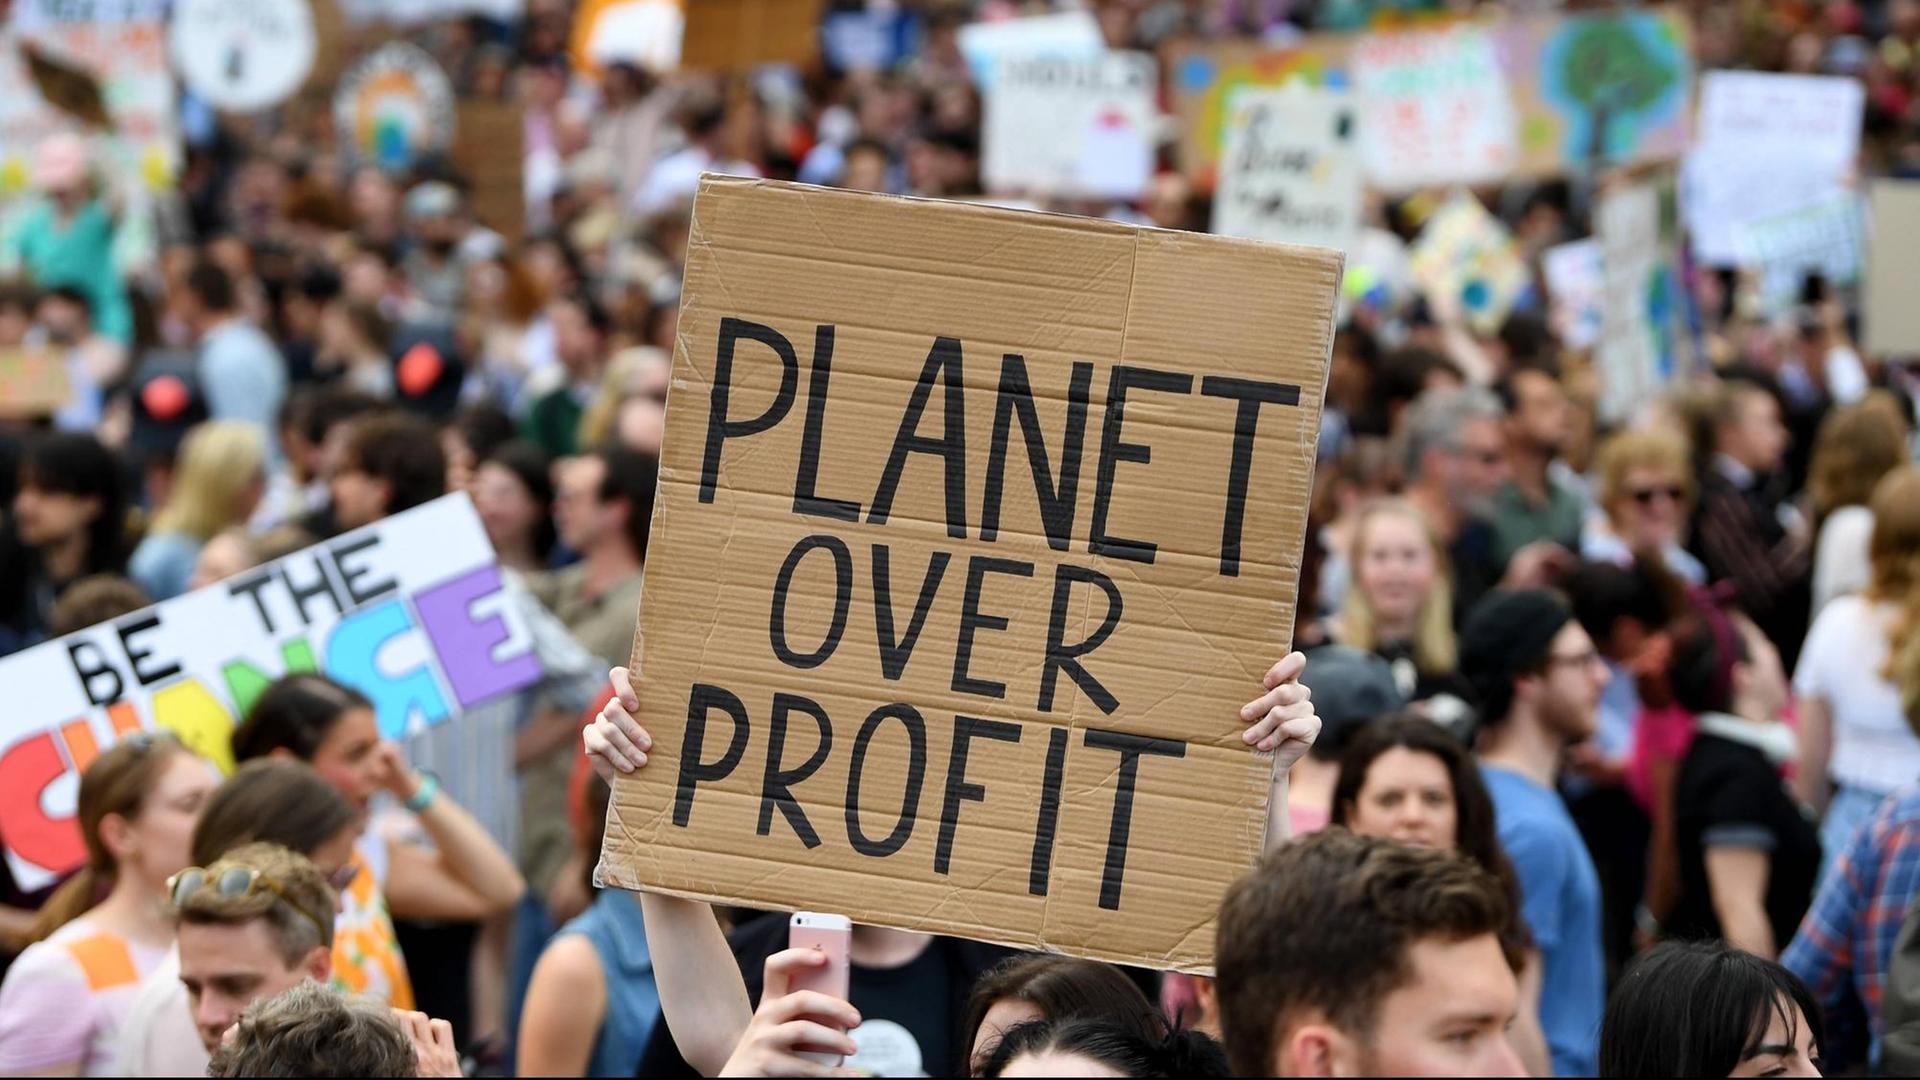 Bei den Protesten des Klimastreiks ist ein Schild zu sehen auf dem "Planet over Profits" zu lesen ist. Dahinter ist eine große Menschenmenge zu erkennen.